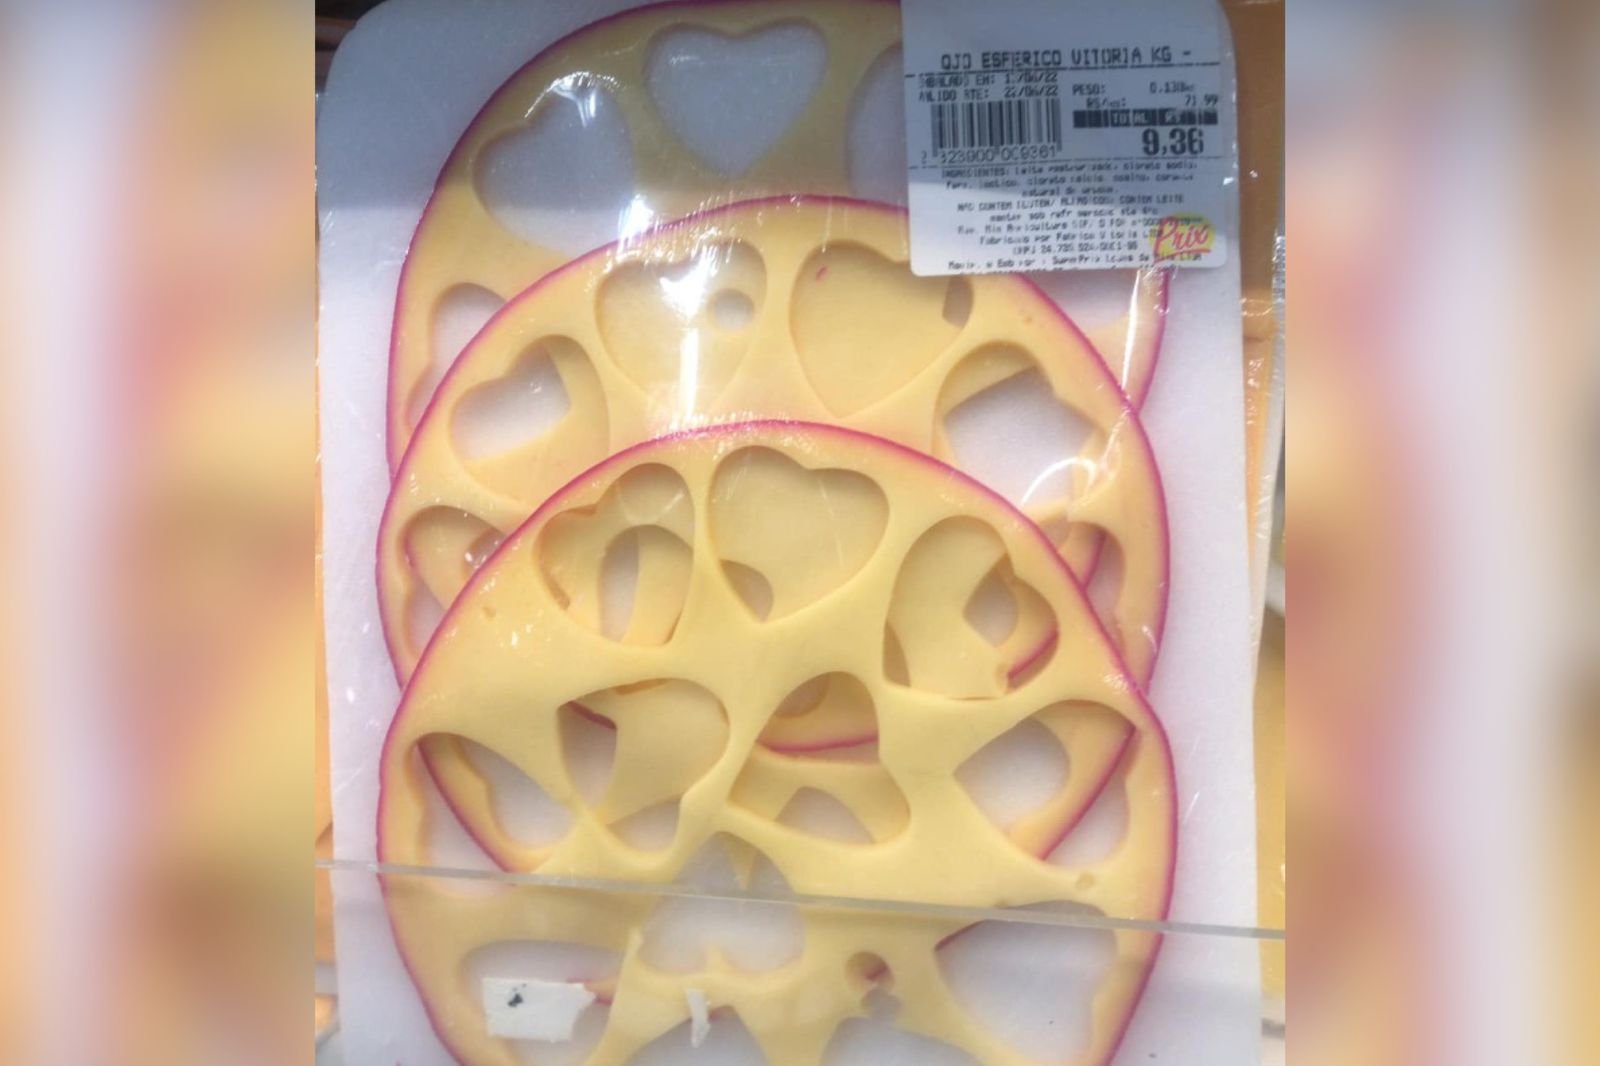 Mercado vende sobra de queijos de coração e revolta consumidores no RJ